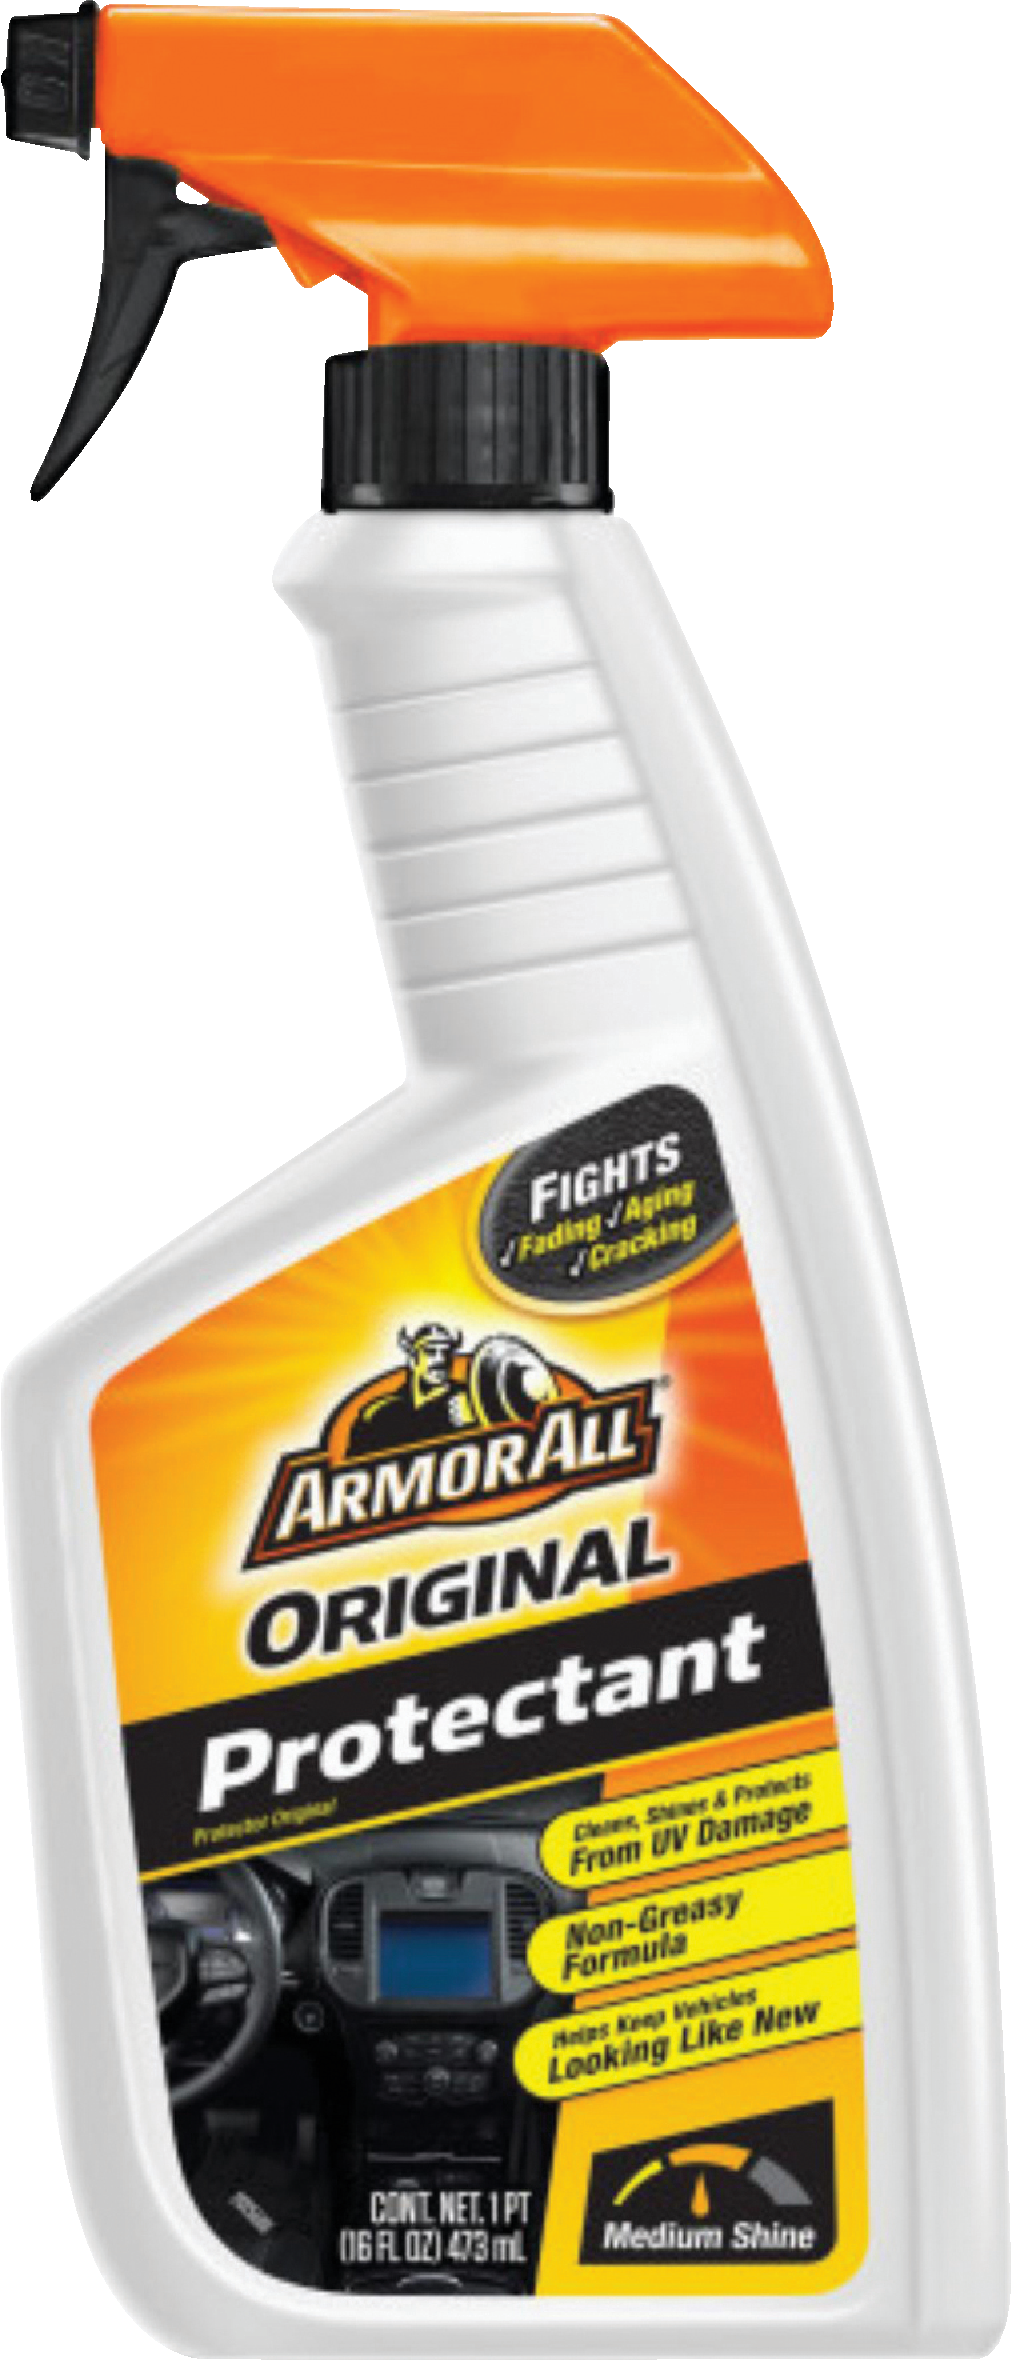 Armor All 16 Oz. Trigger Spray Original Protectant